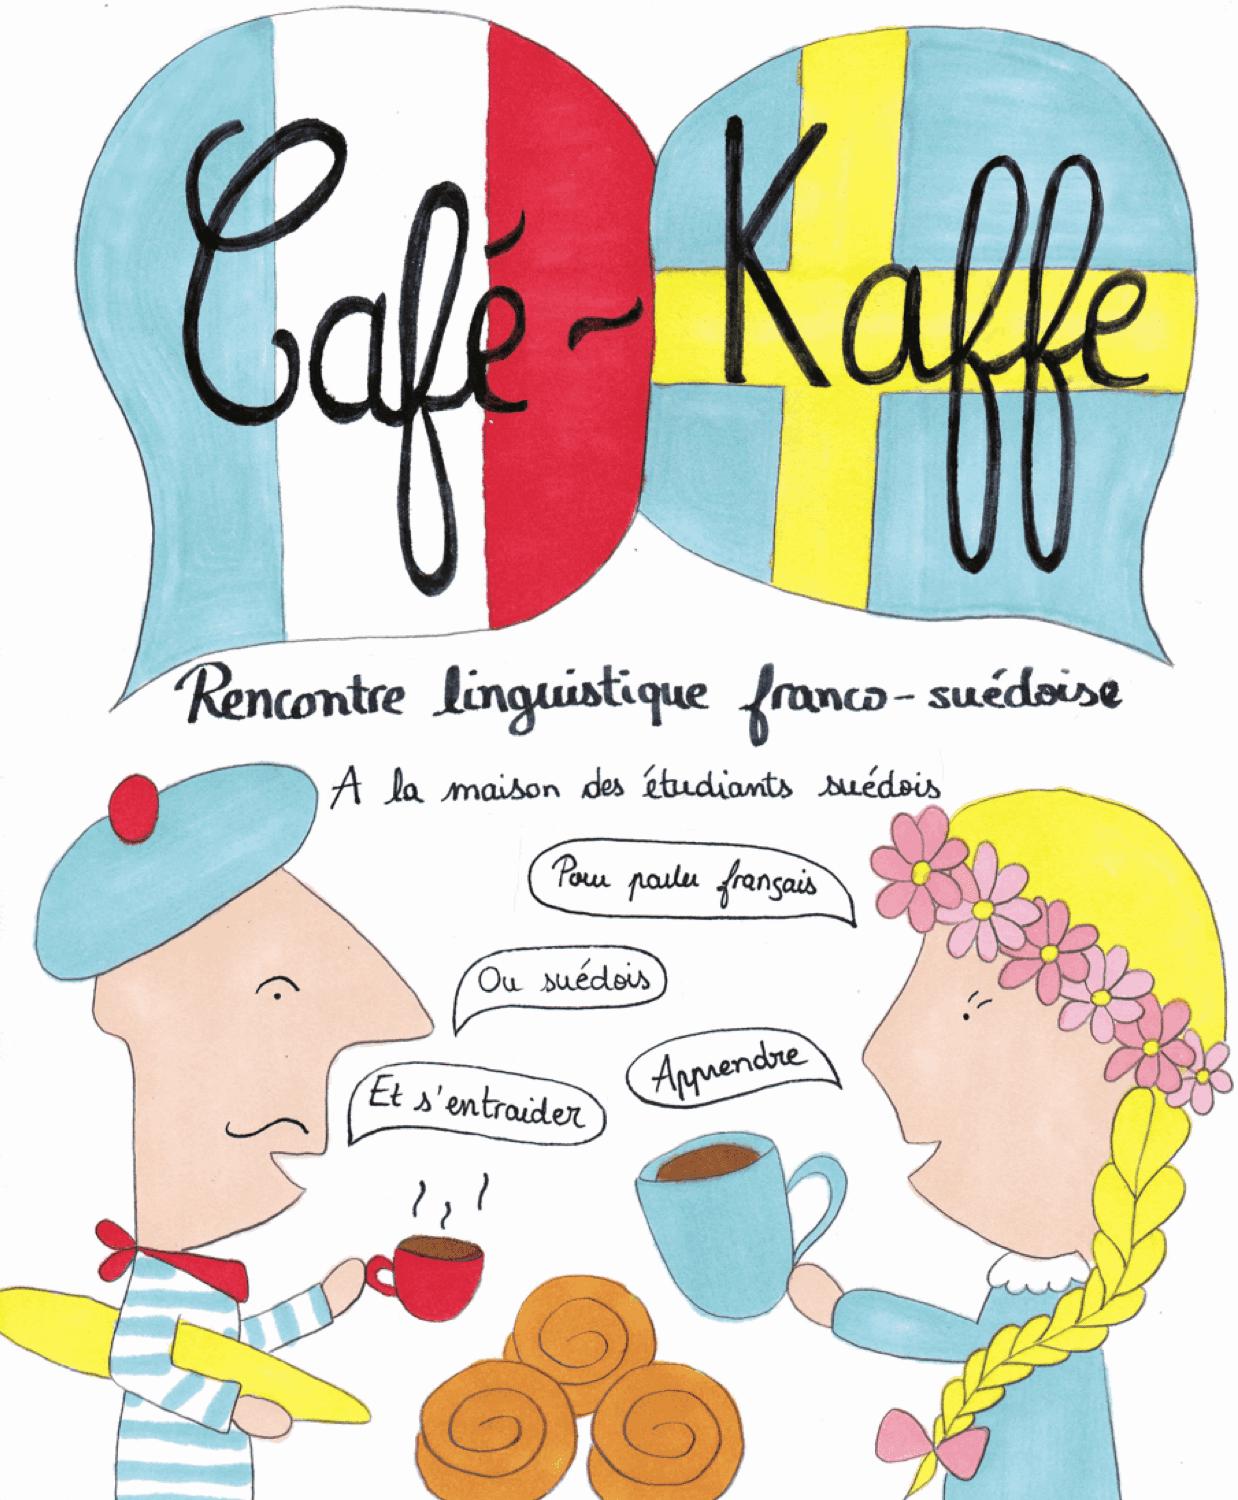 Café – Kaffe börjar igen torsdag den 20 september 2018, från kl 19 till kl 21.